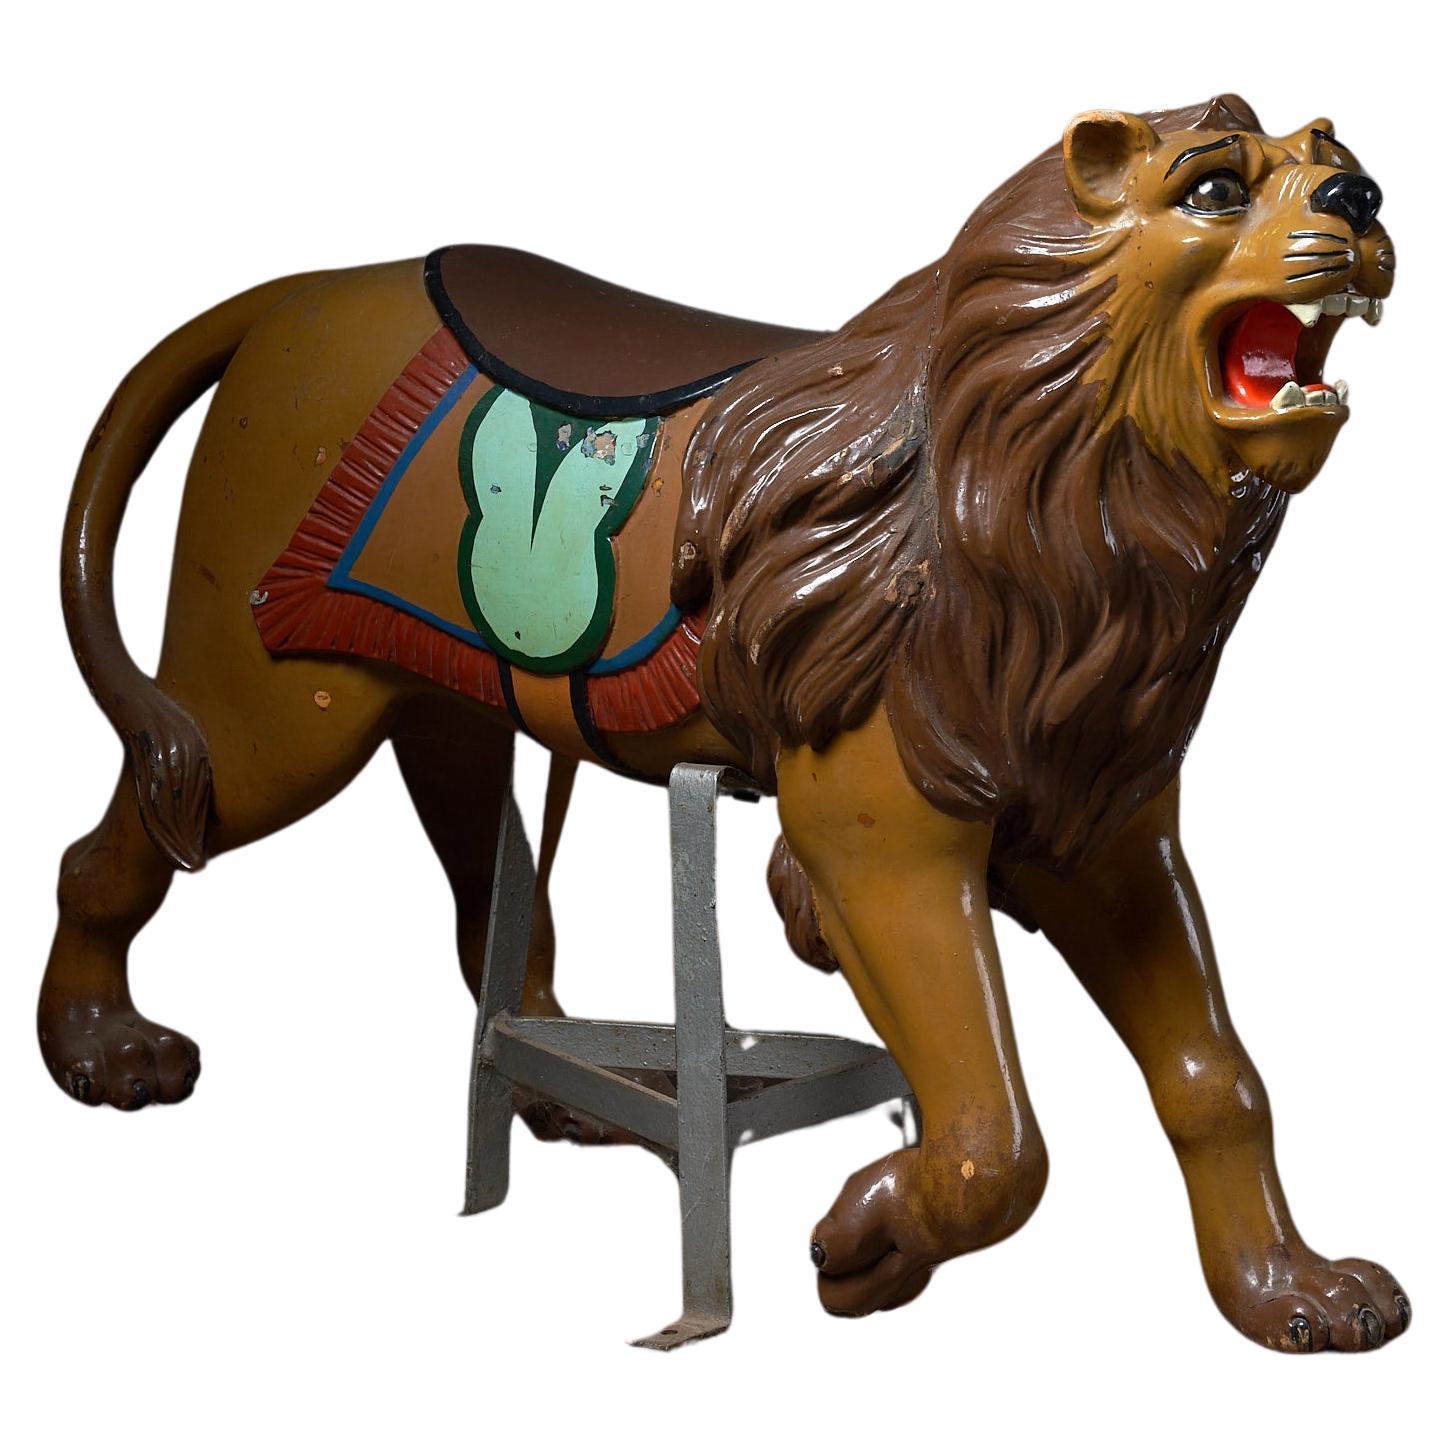 Figurine de carrousel en bois sculptée d'un lion : Antiquities